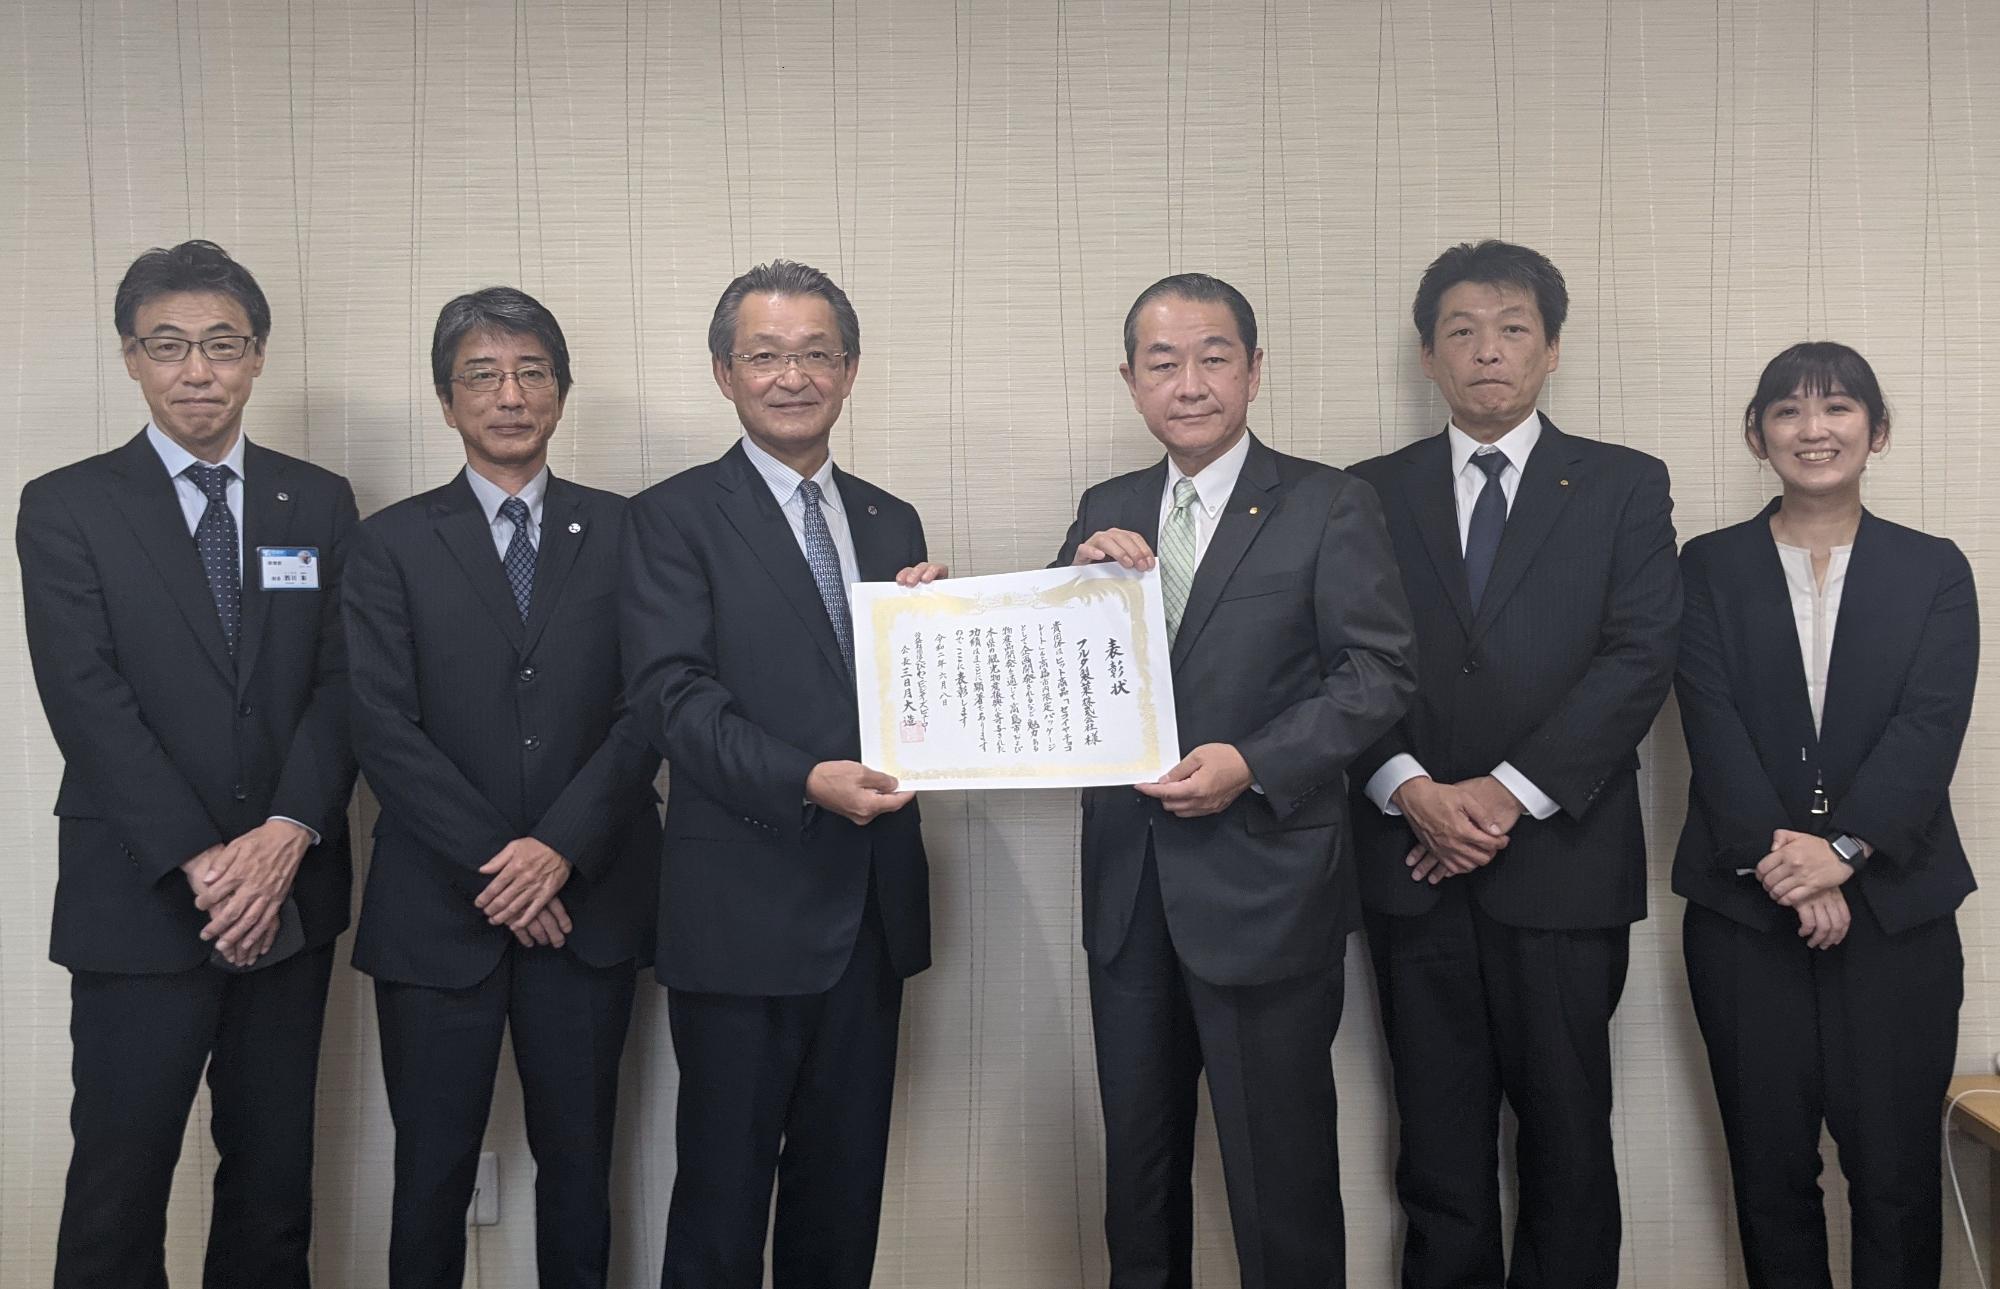 左右に二人ずつ関係者が立ち、中央で福井市長と古田社長が表彰状を持っている表彰状伝達式の写真